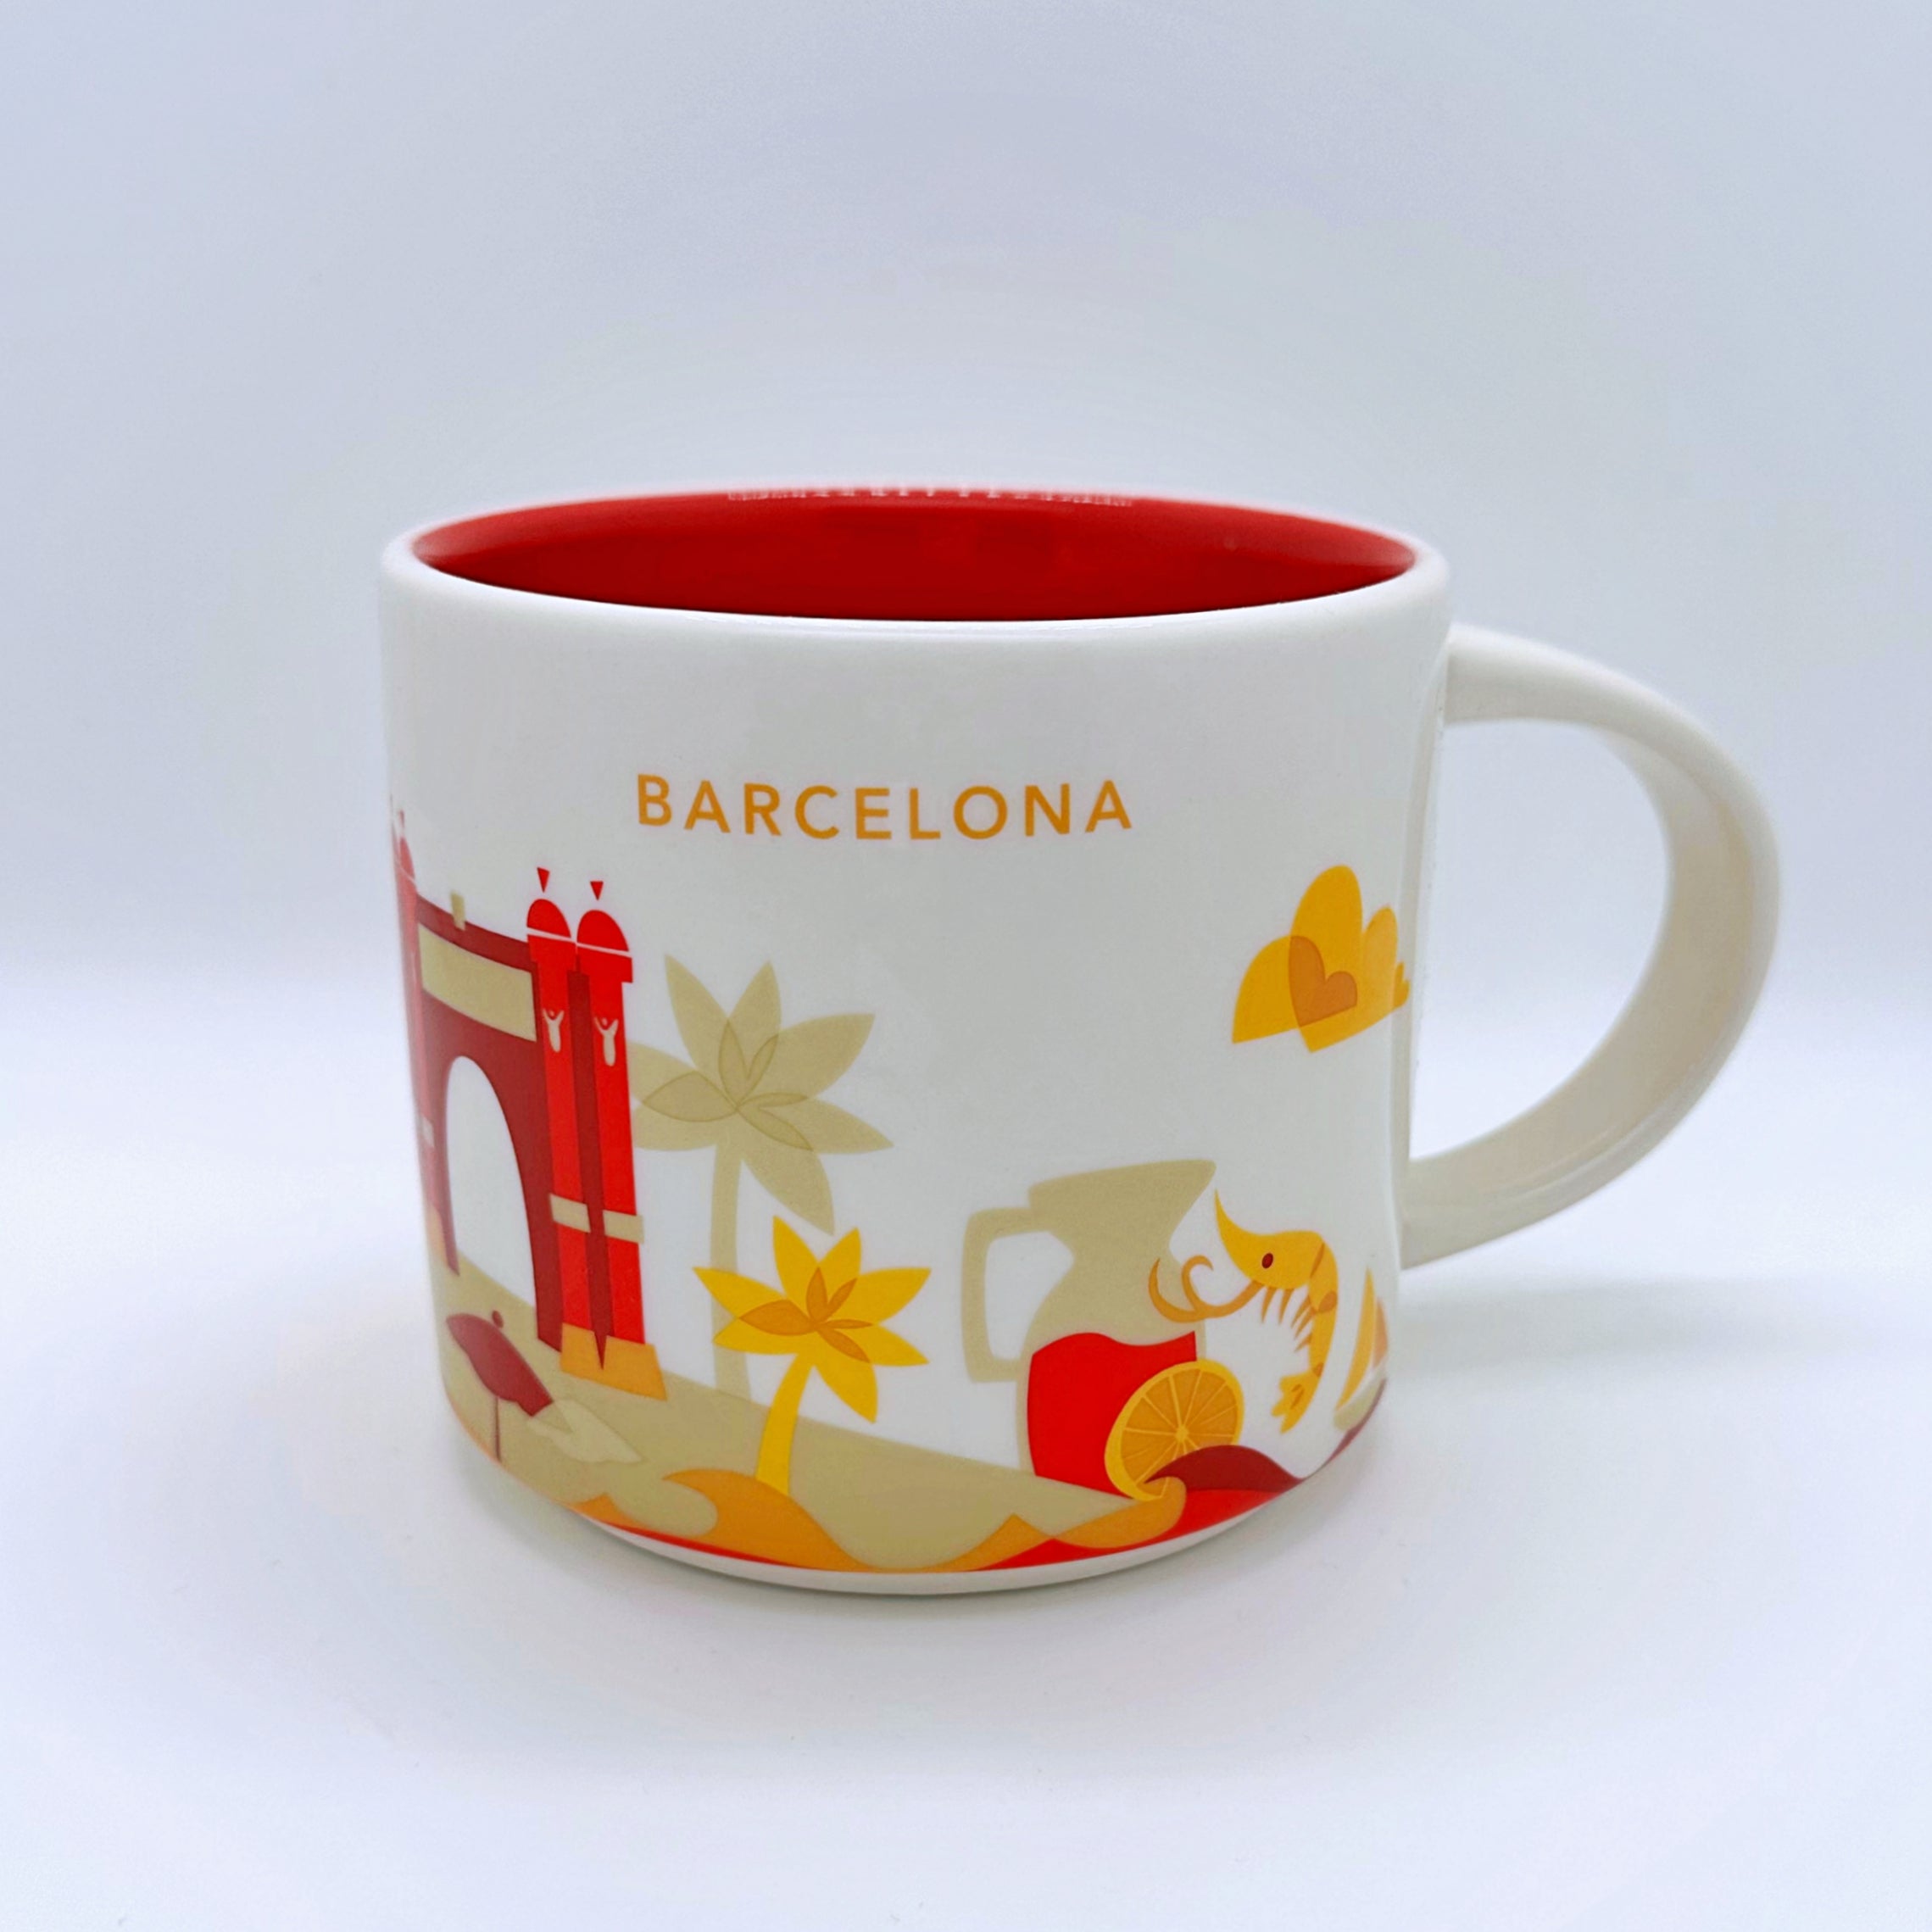 Kaffee Tee und Cappuccino Tasse von Starbucks mit gemalten Bildern aus der Stadt Barcelona